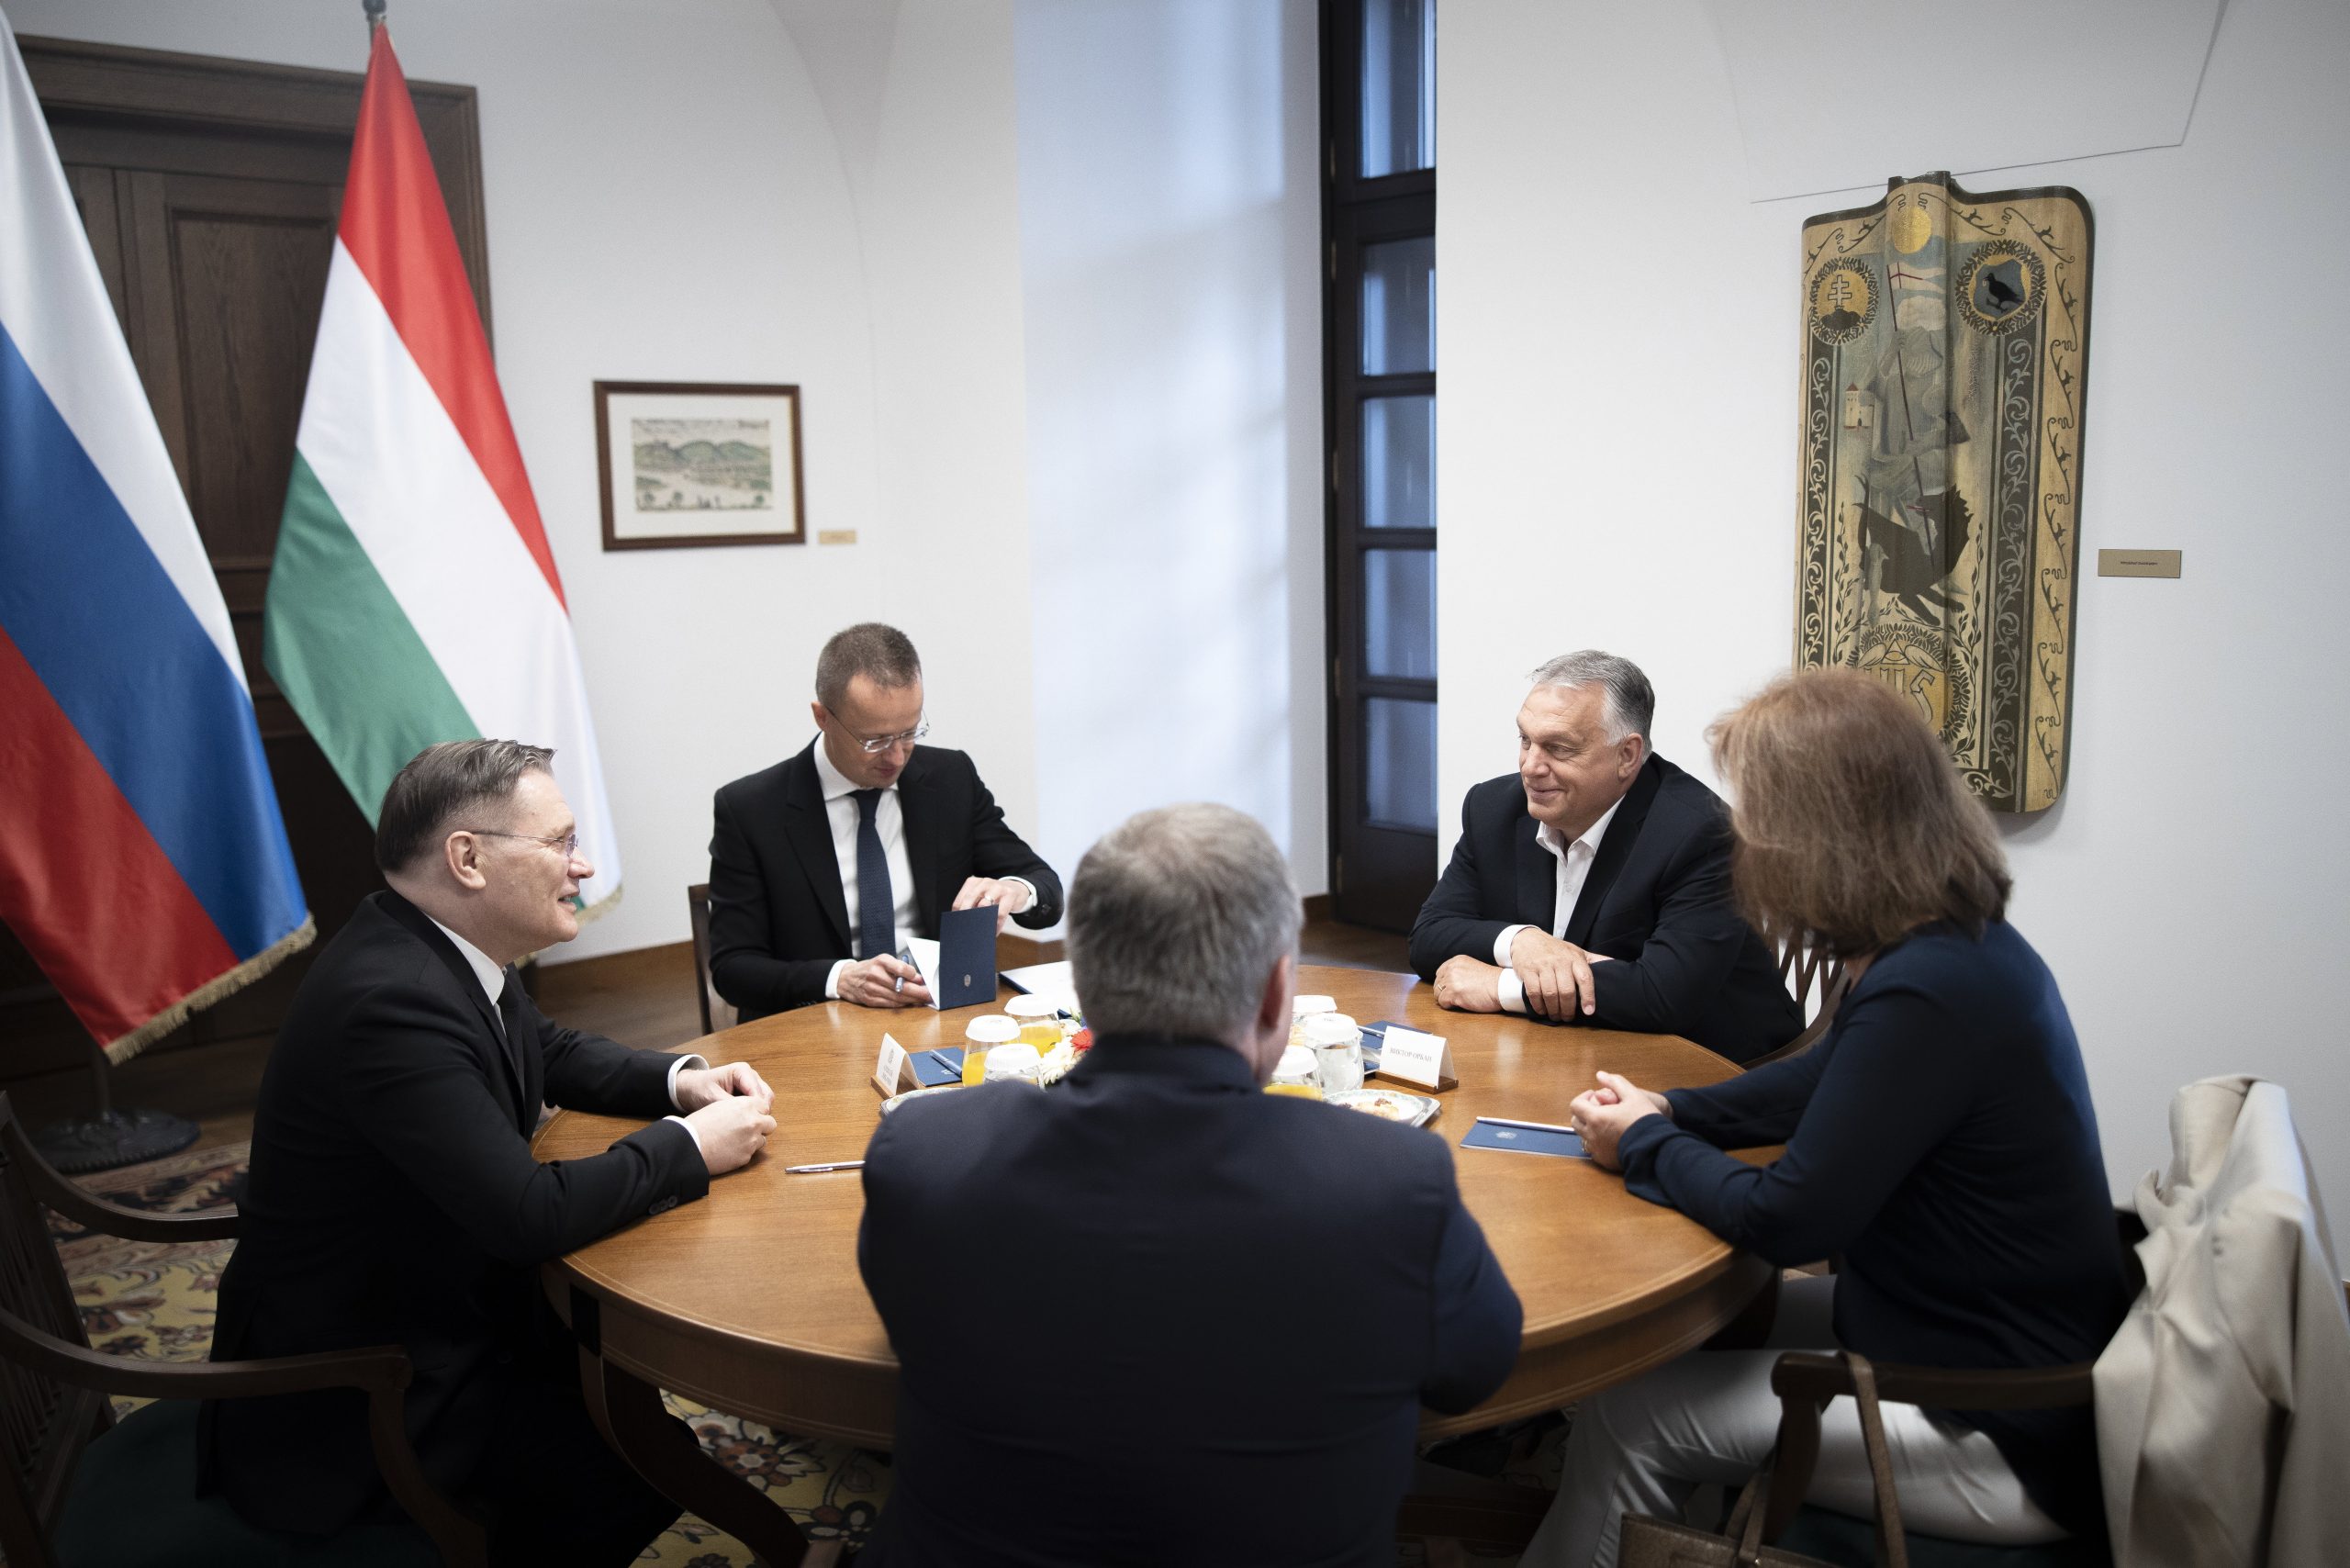 Viktor Orbán in Talks with Rosatom Boss